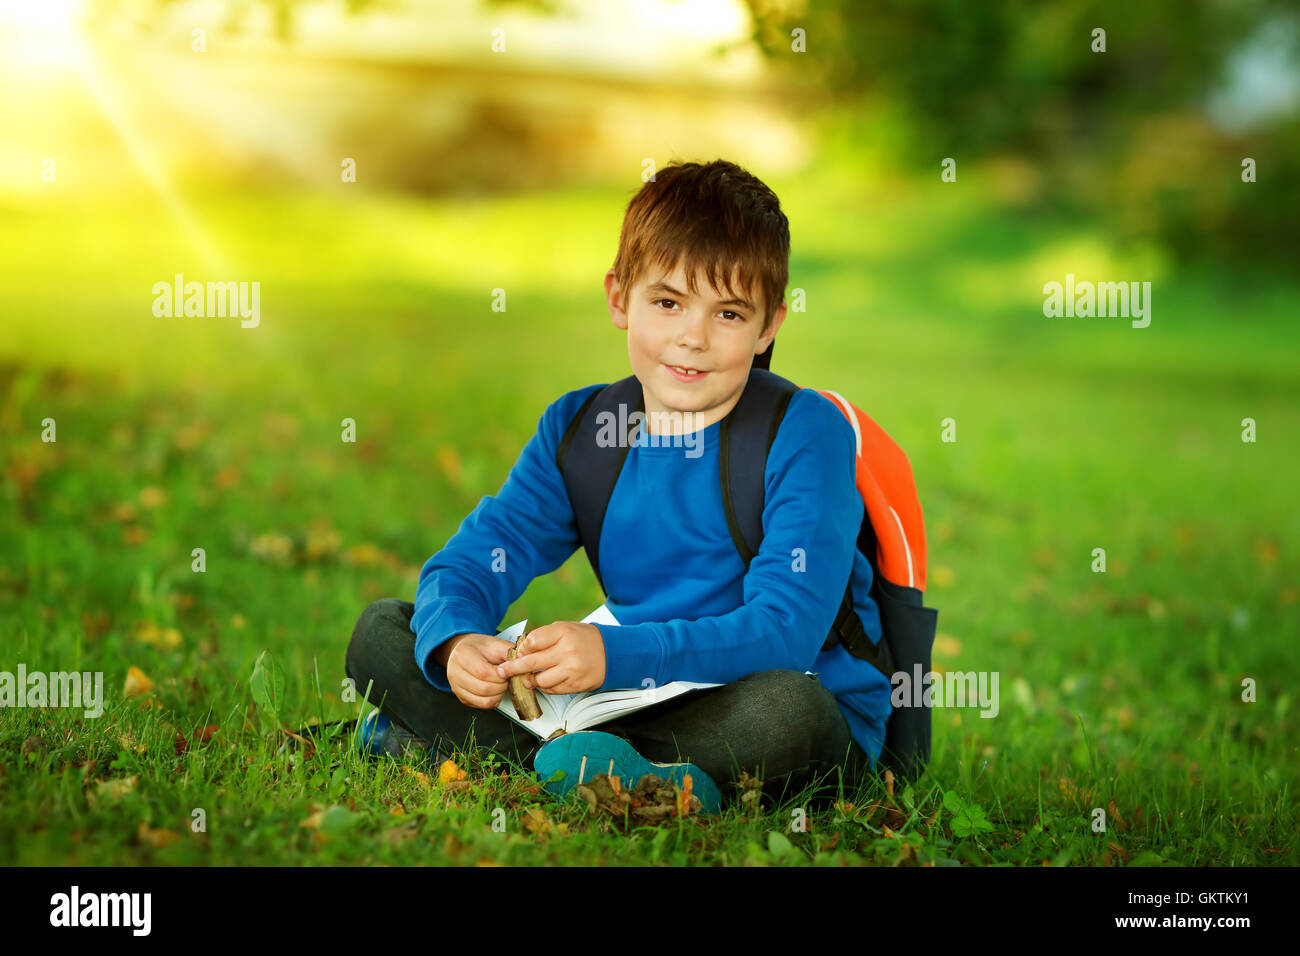 Junge sitzt mit Rucksack im park Stockfoto